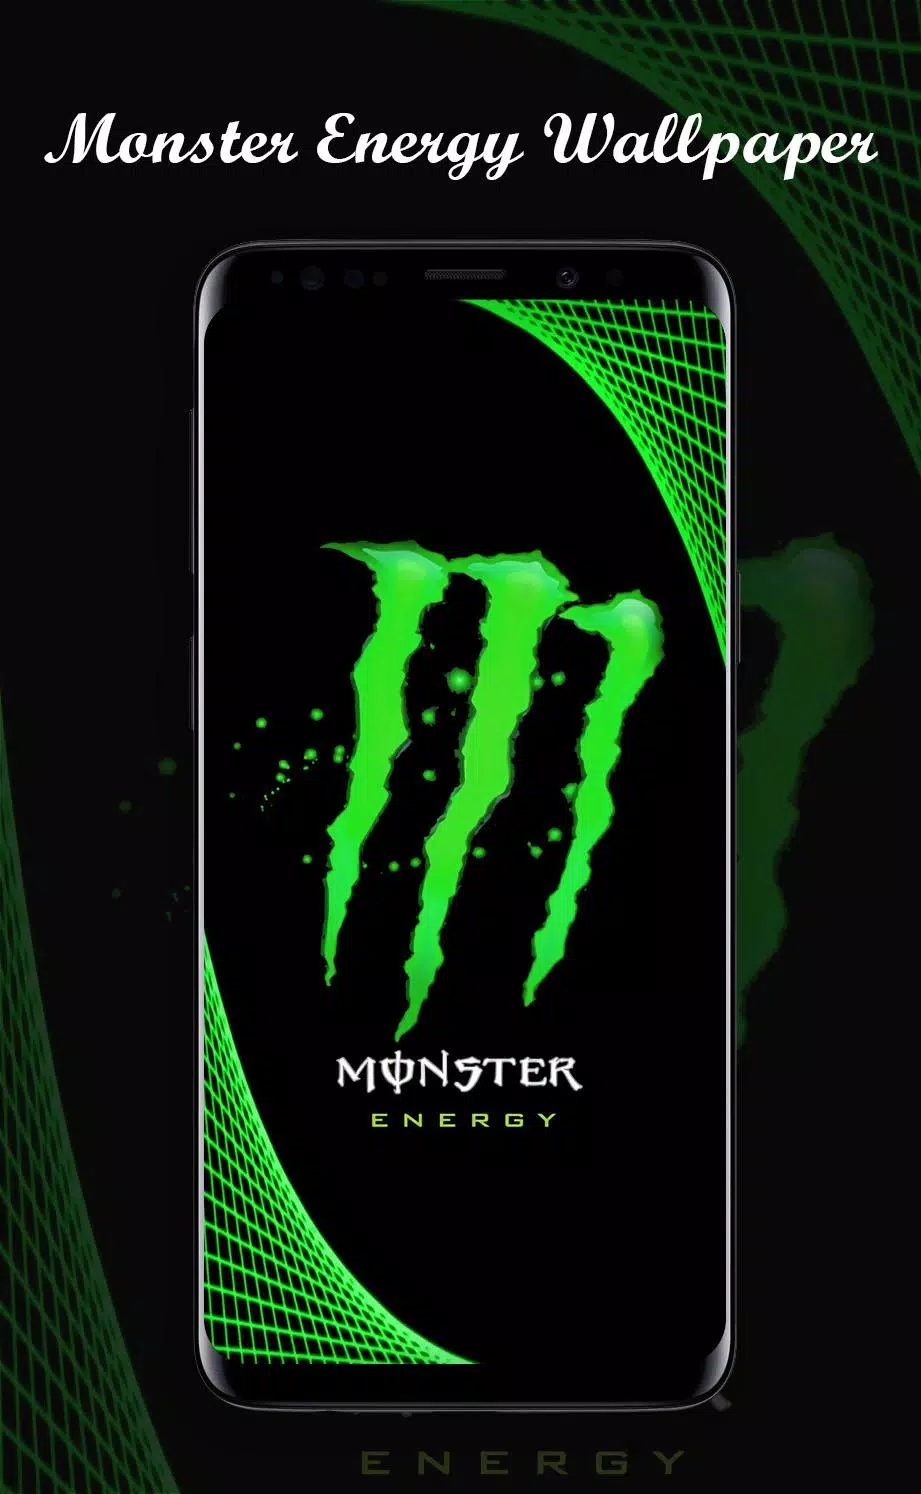 Monster Energy Wallpapers HD 4K Android के लिए APK डाउनलोड करें